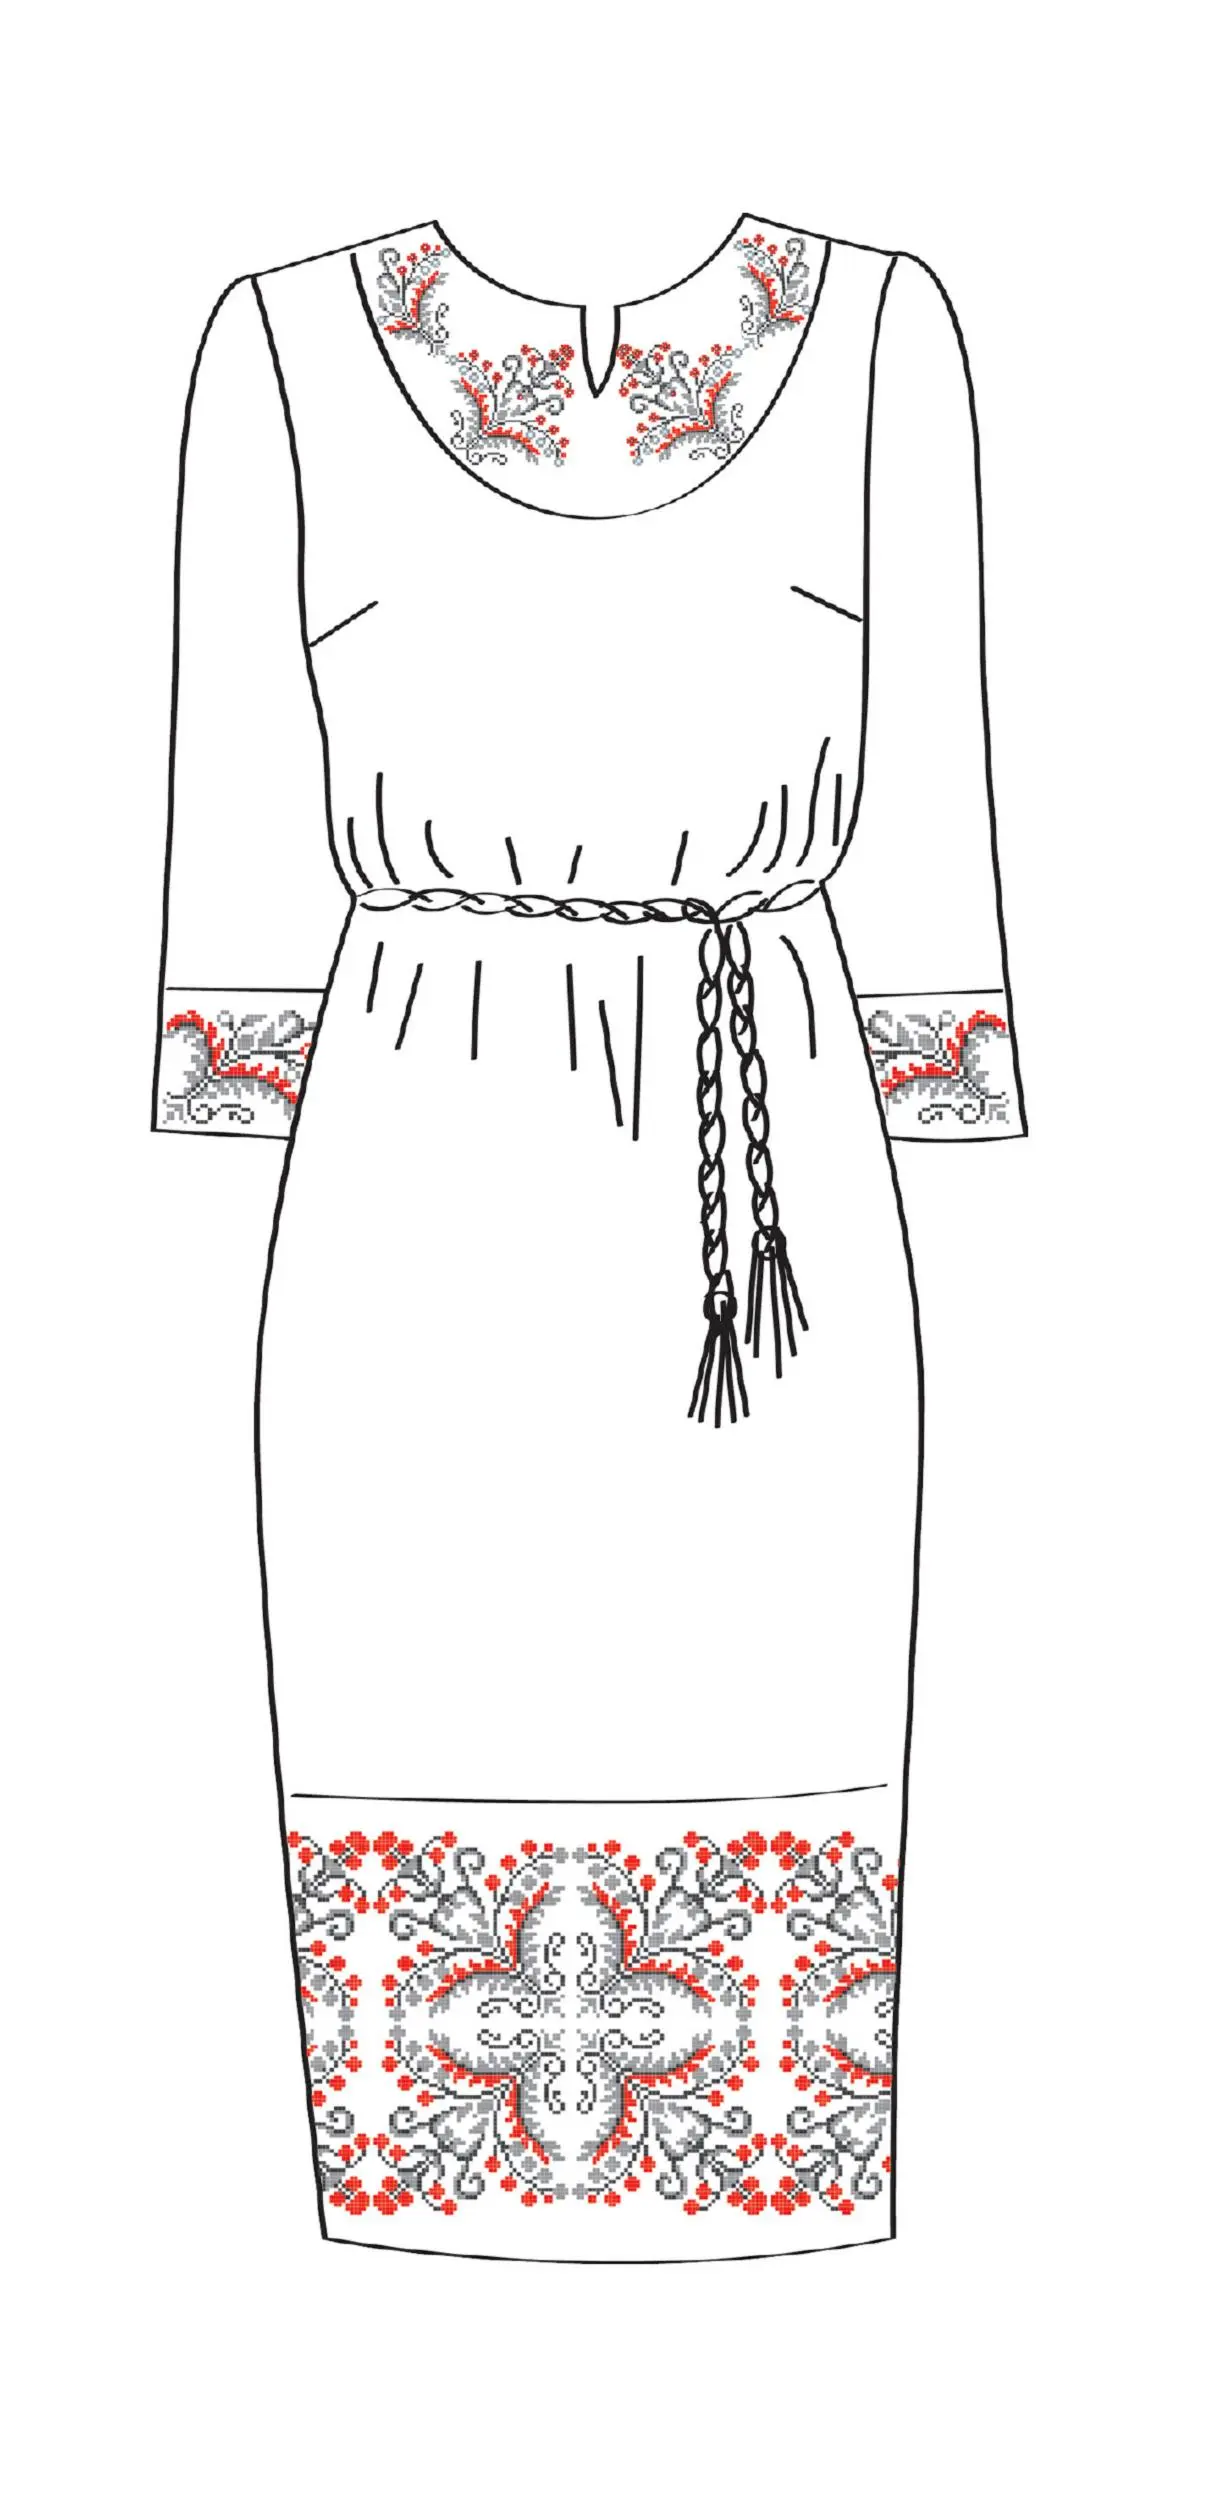 820-14/09 Плаття жіноче з поясом, біле, розмір 46